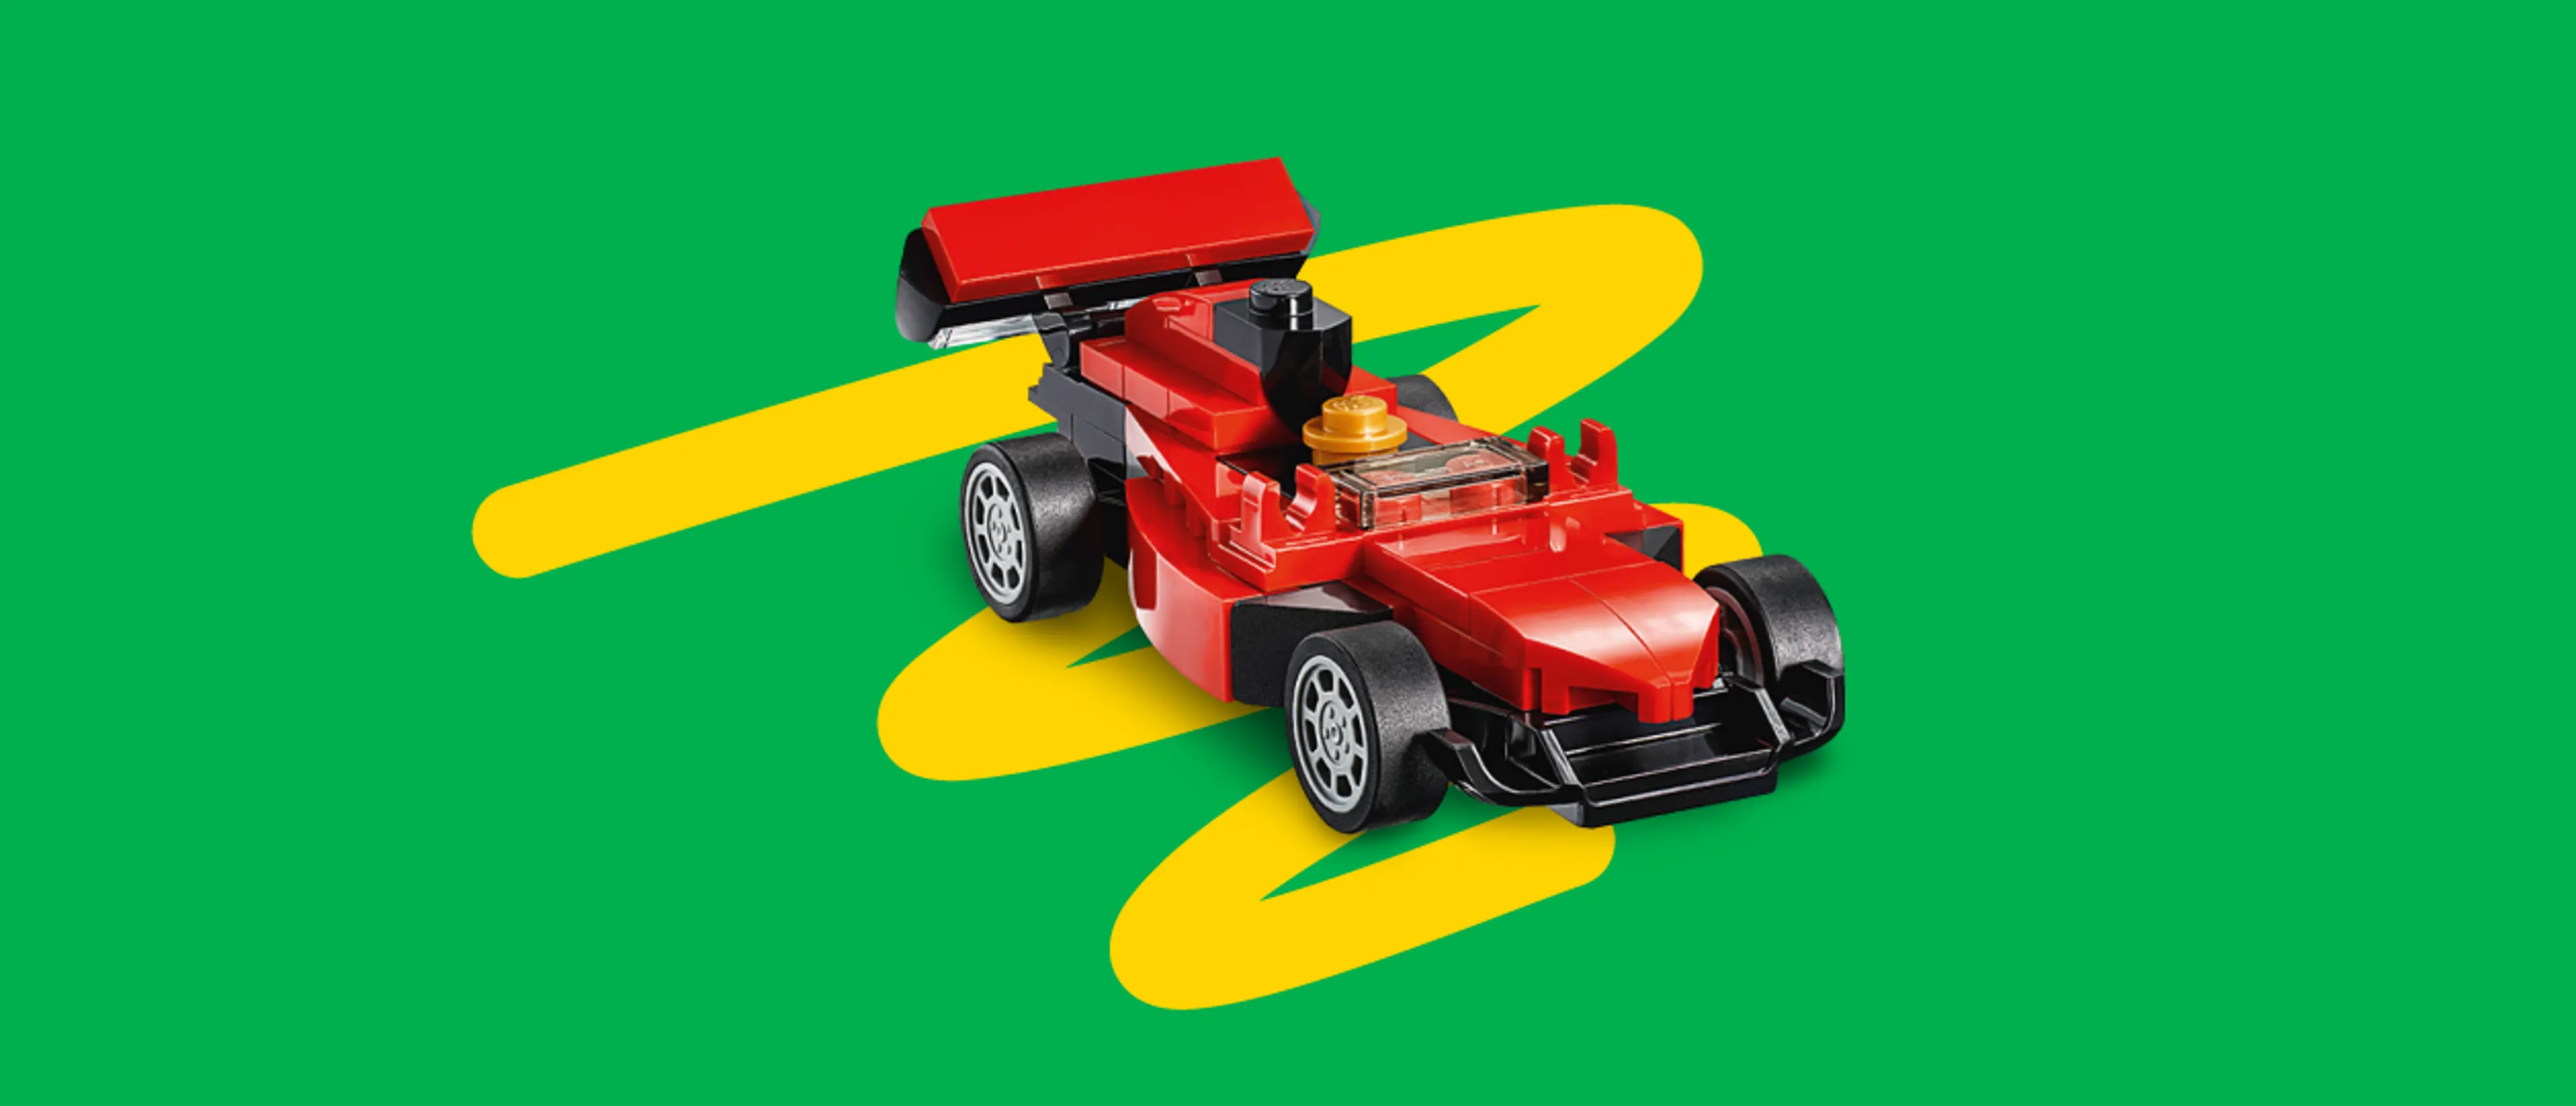 Samochód wyścigowy LEGO